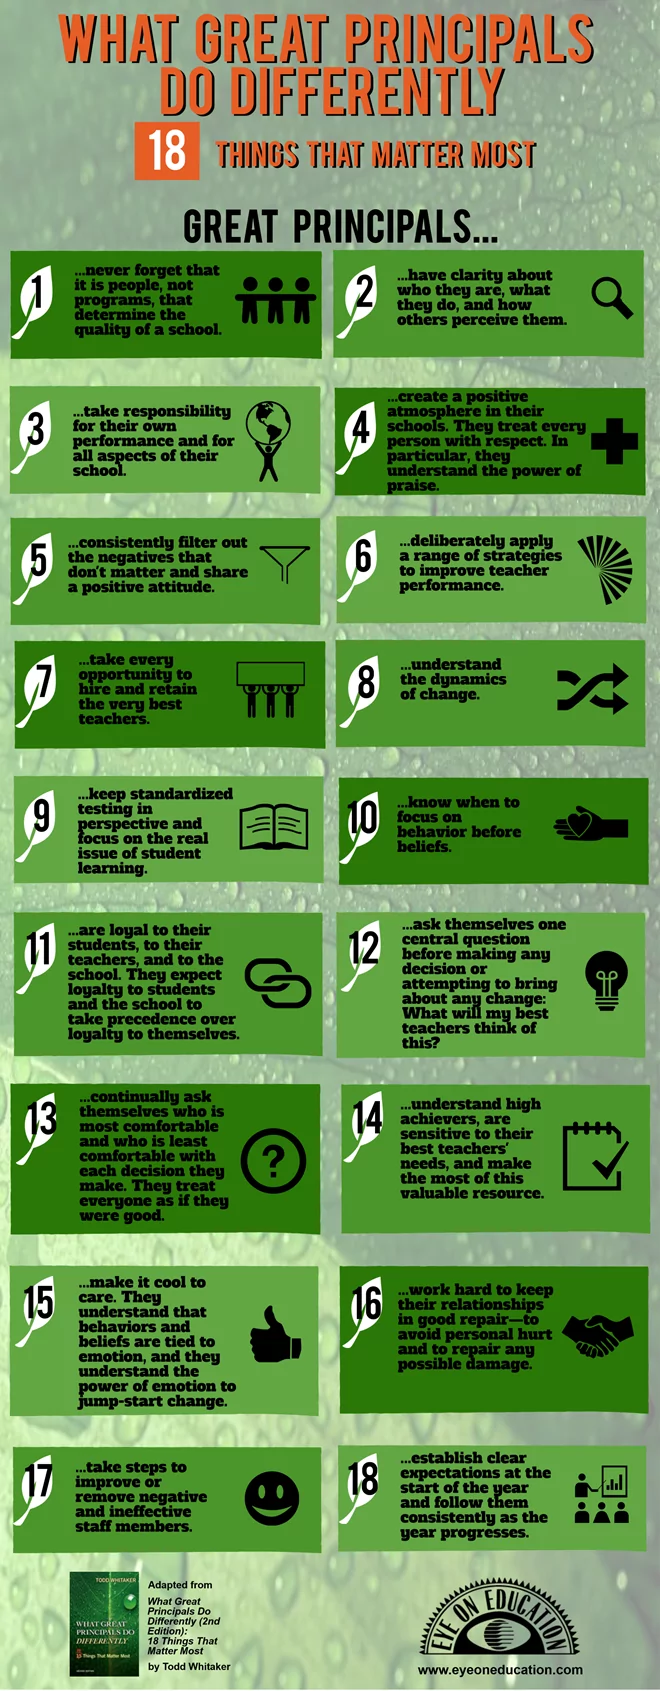 18 characteristics of great school principals